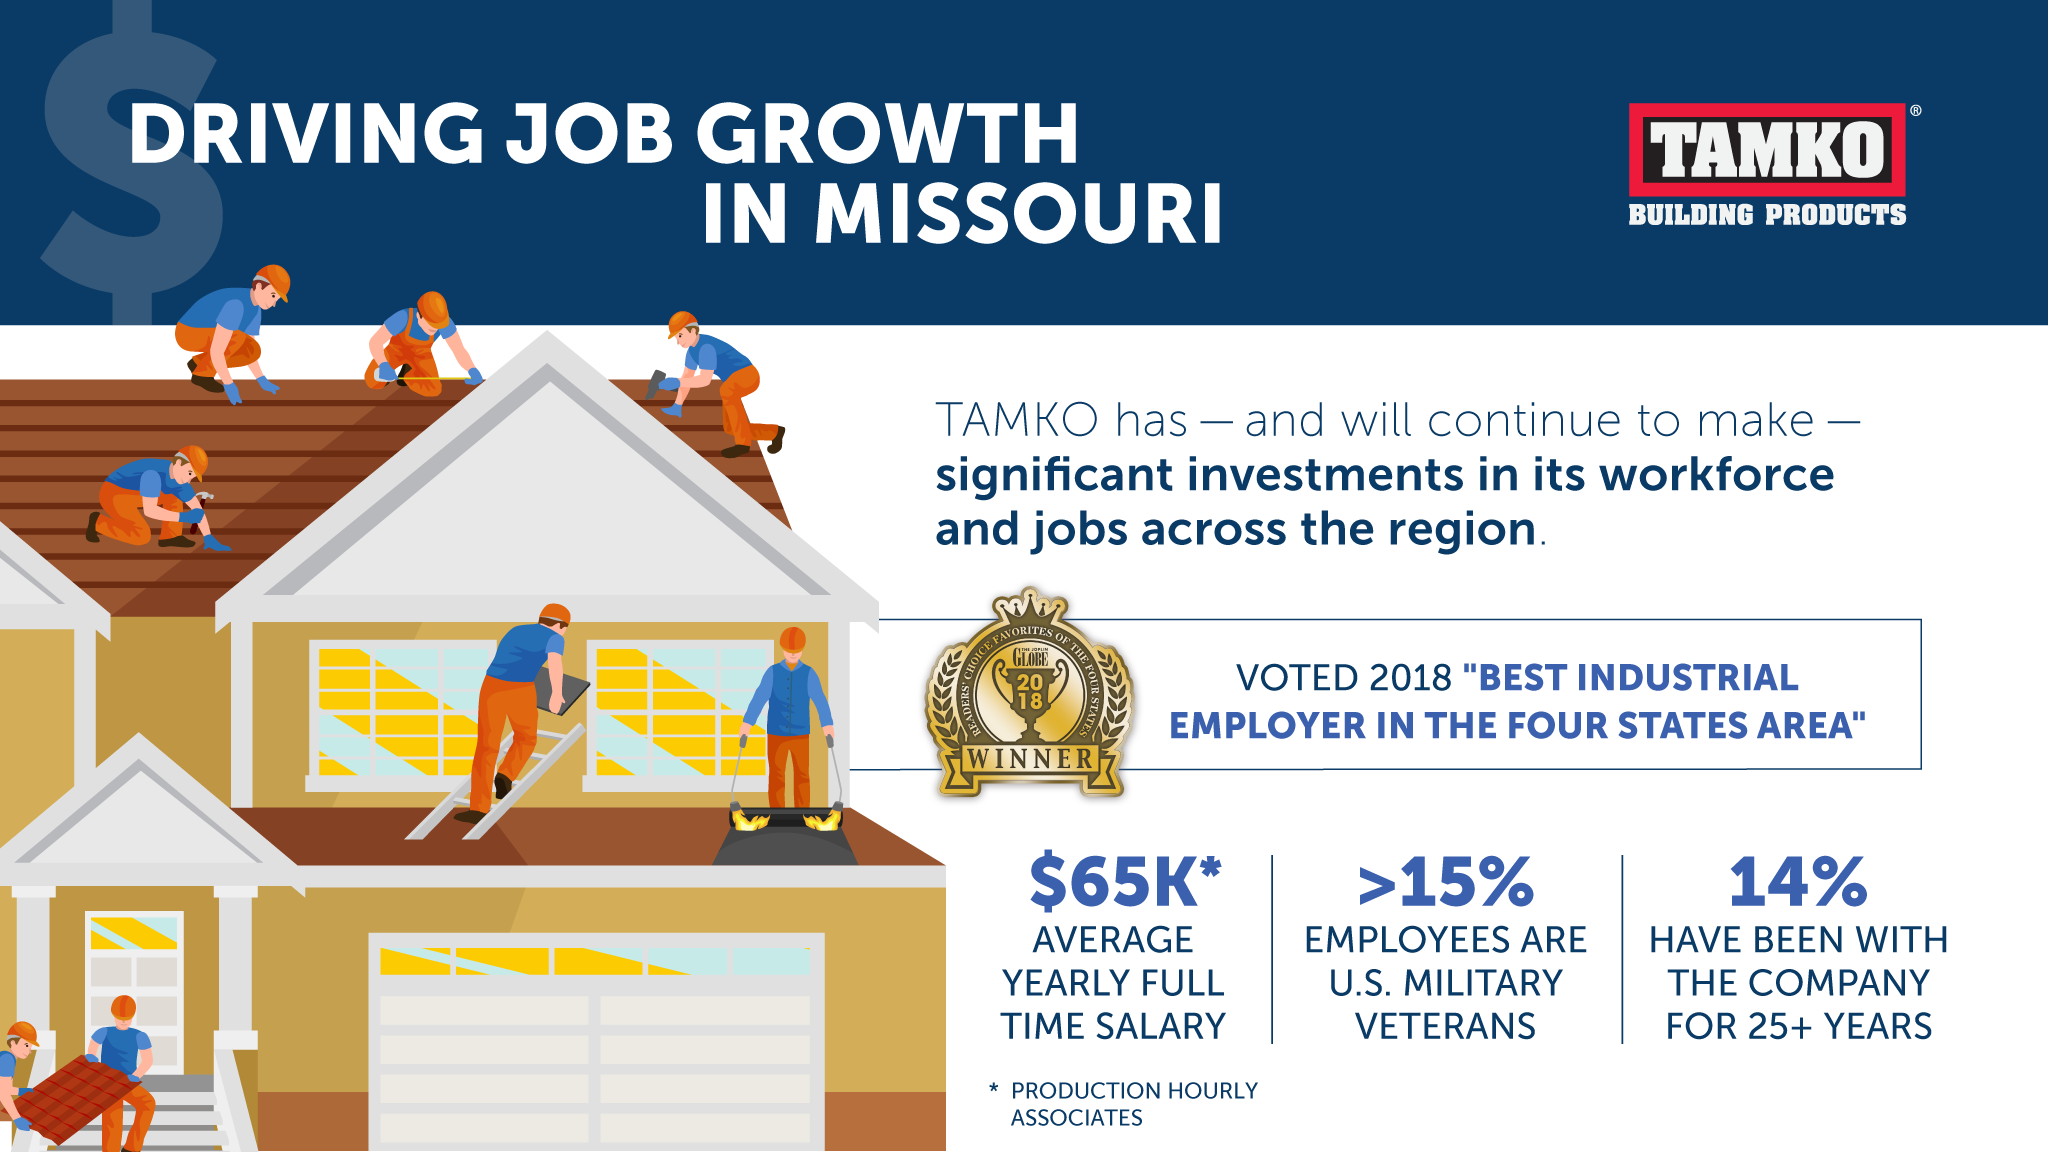 TAMKO - Driving Job Growth in Missouri